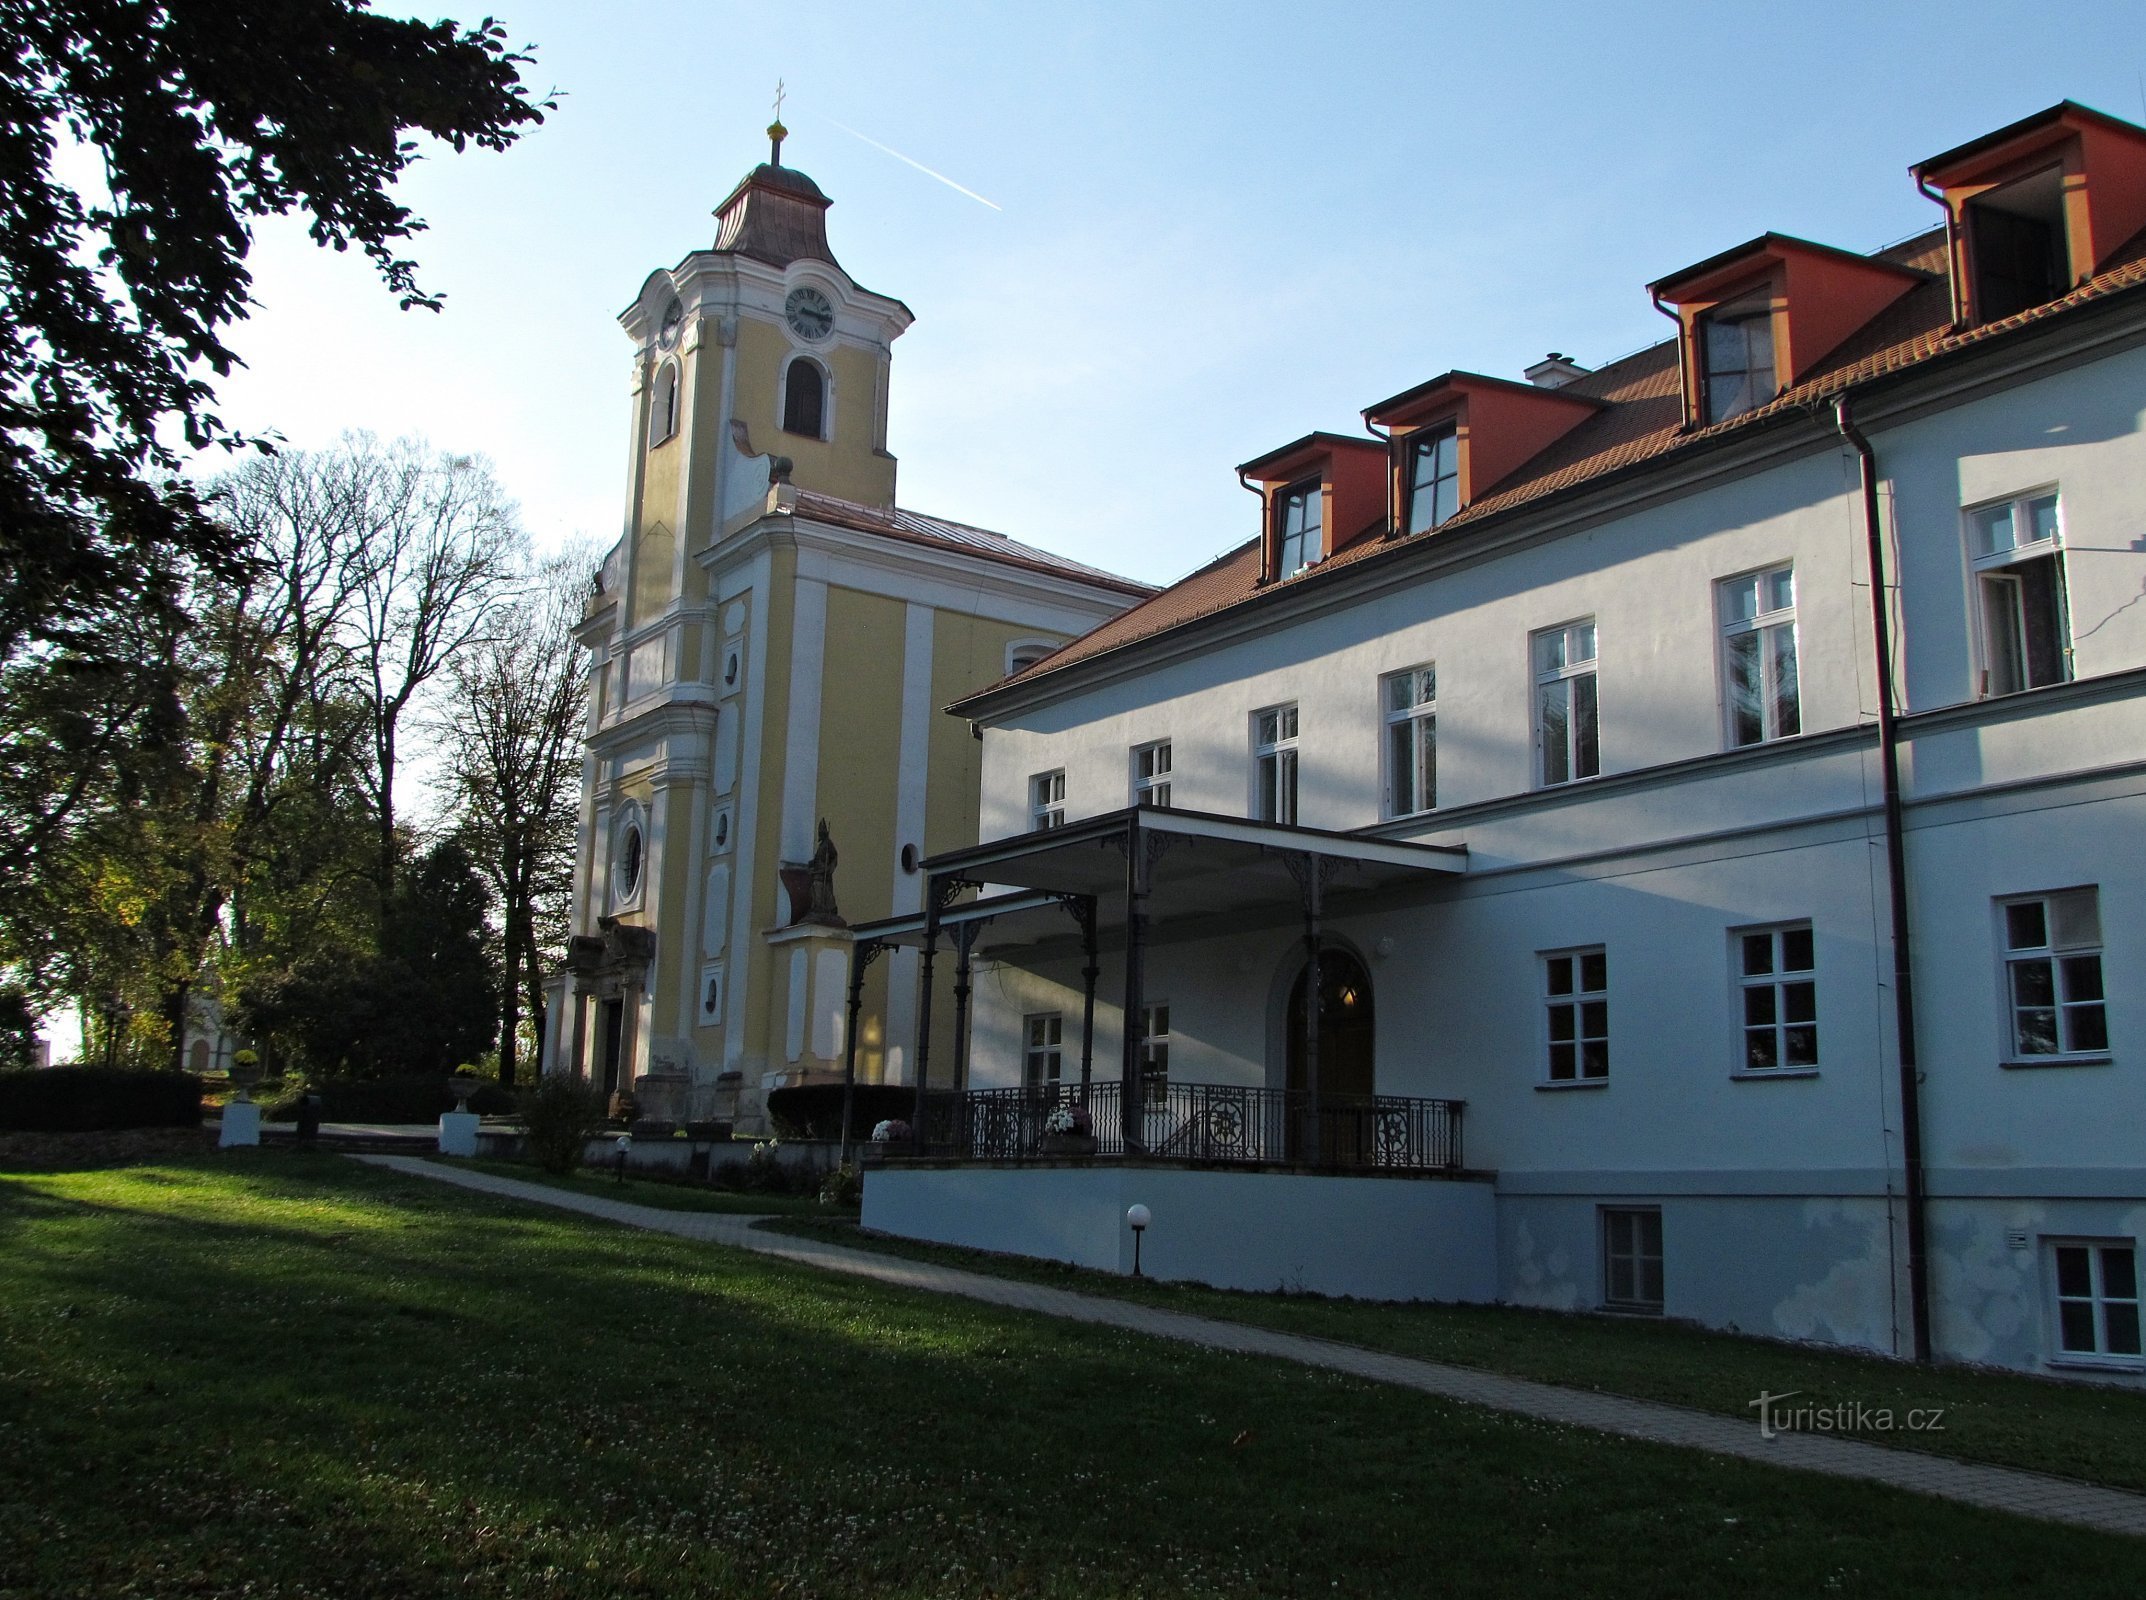 De la Komárov până la atracțiile din Pohořice, cele de lângă Zlín